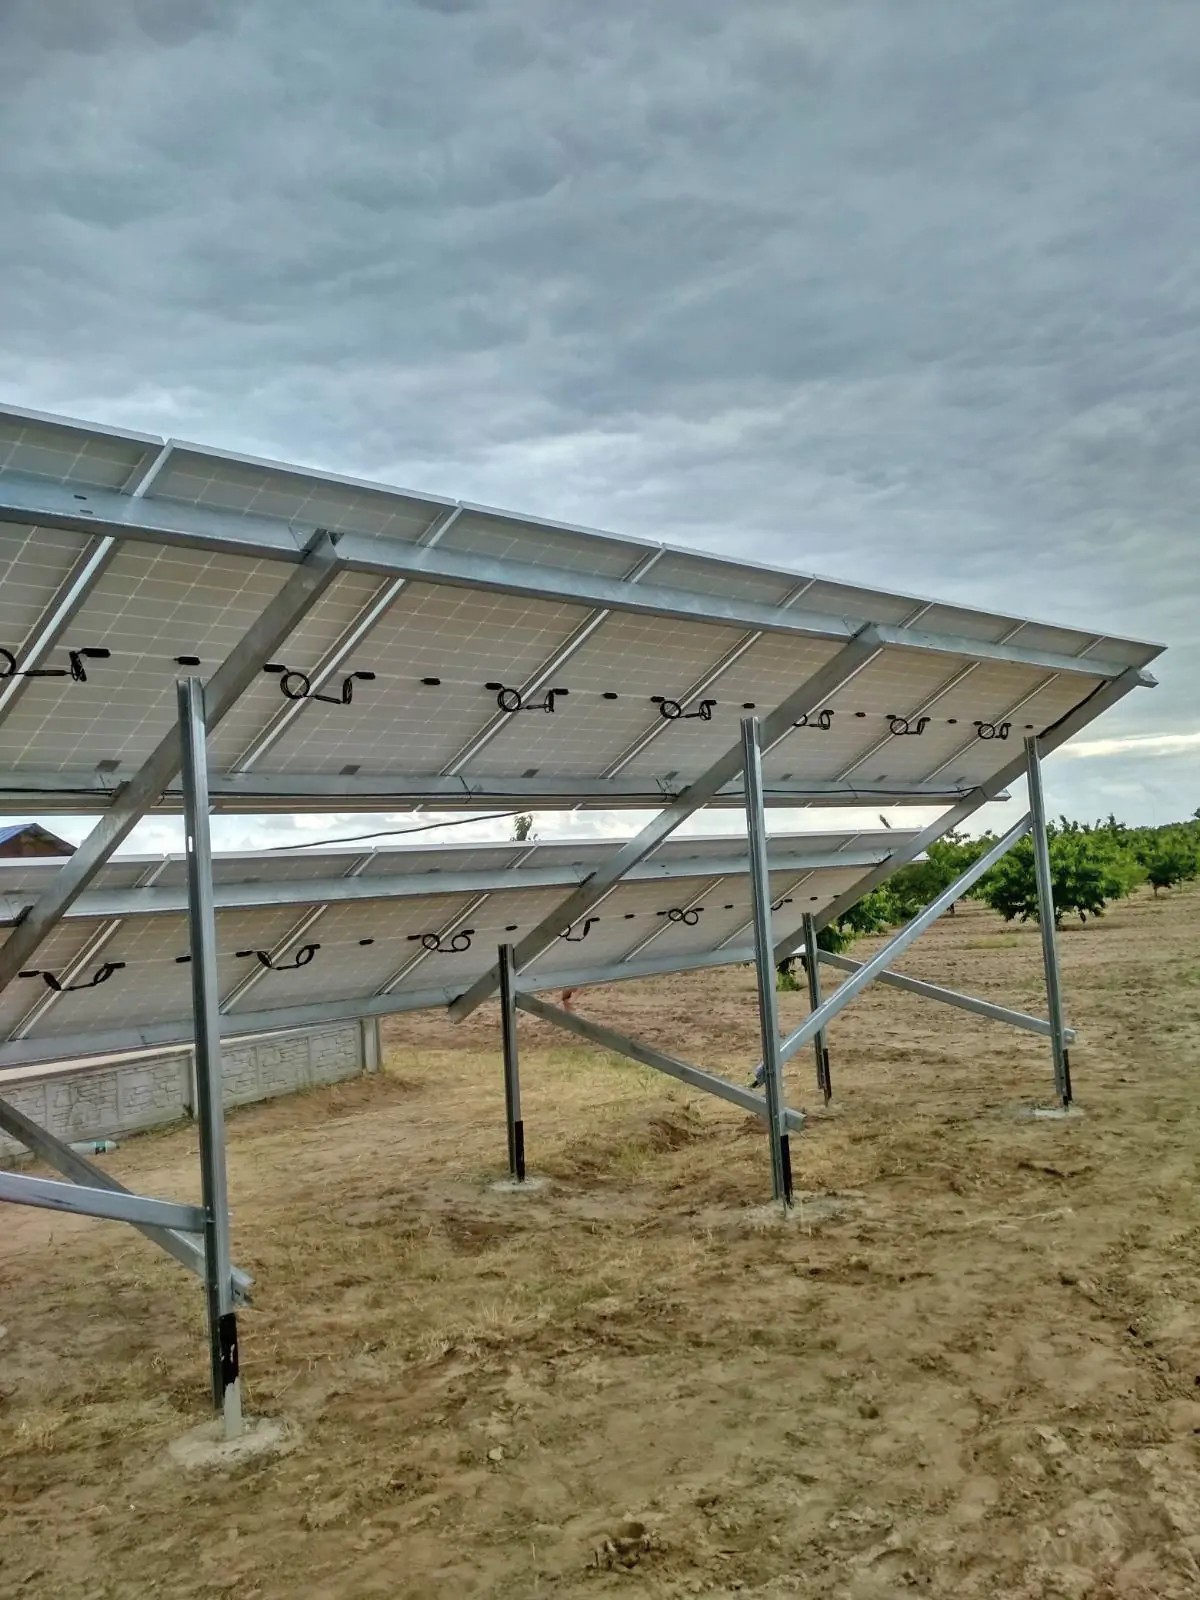 Автономная солнечная станция 7.5 кВт с. Шелюги Запорожская обл. (июнь 2021)